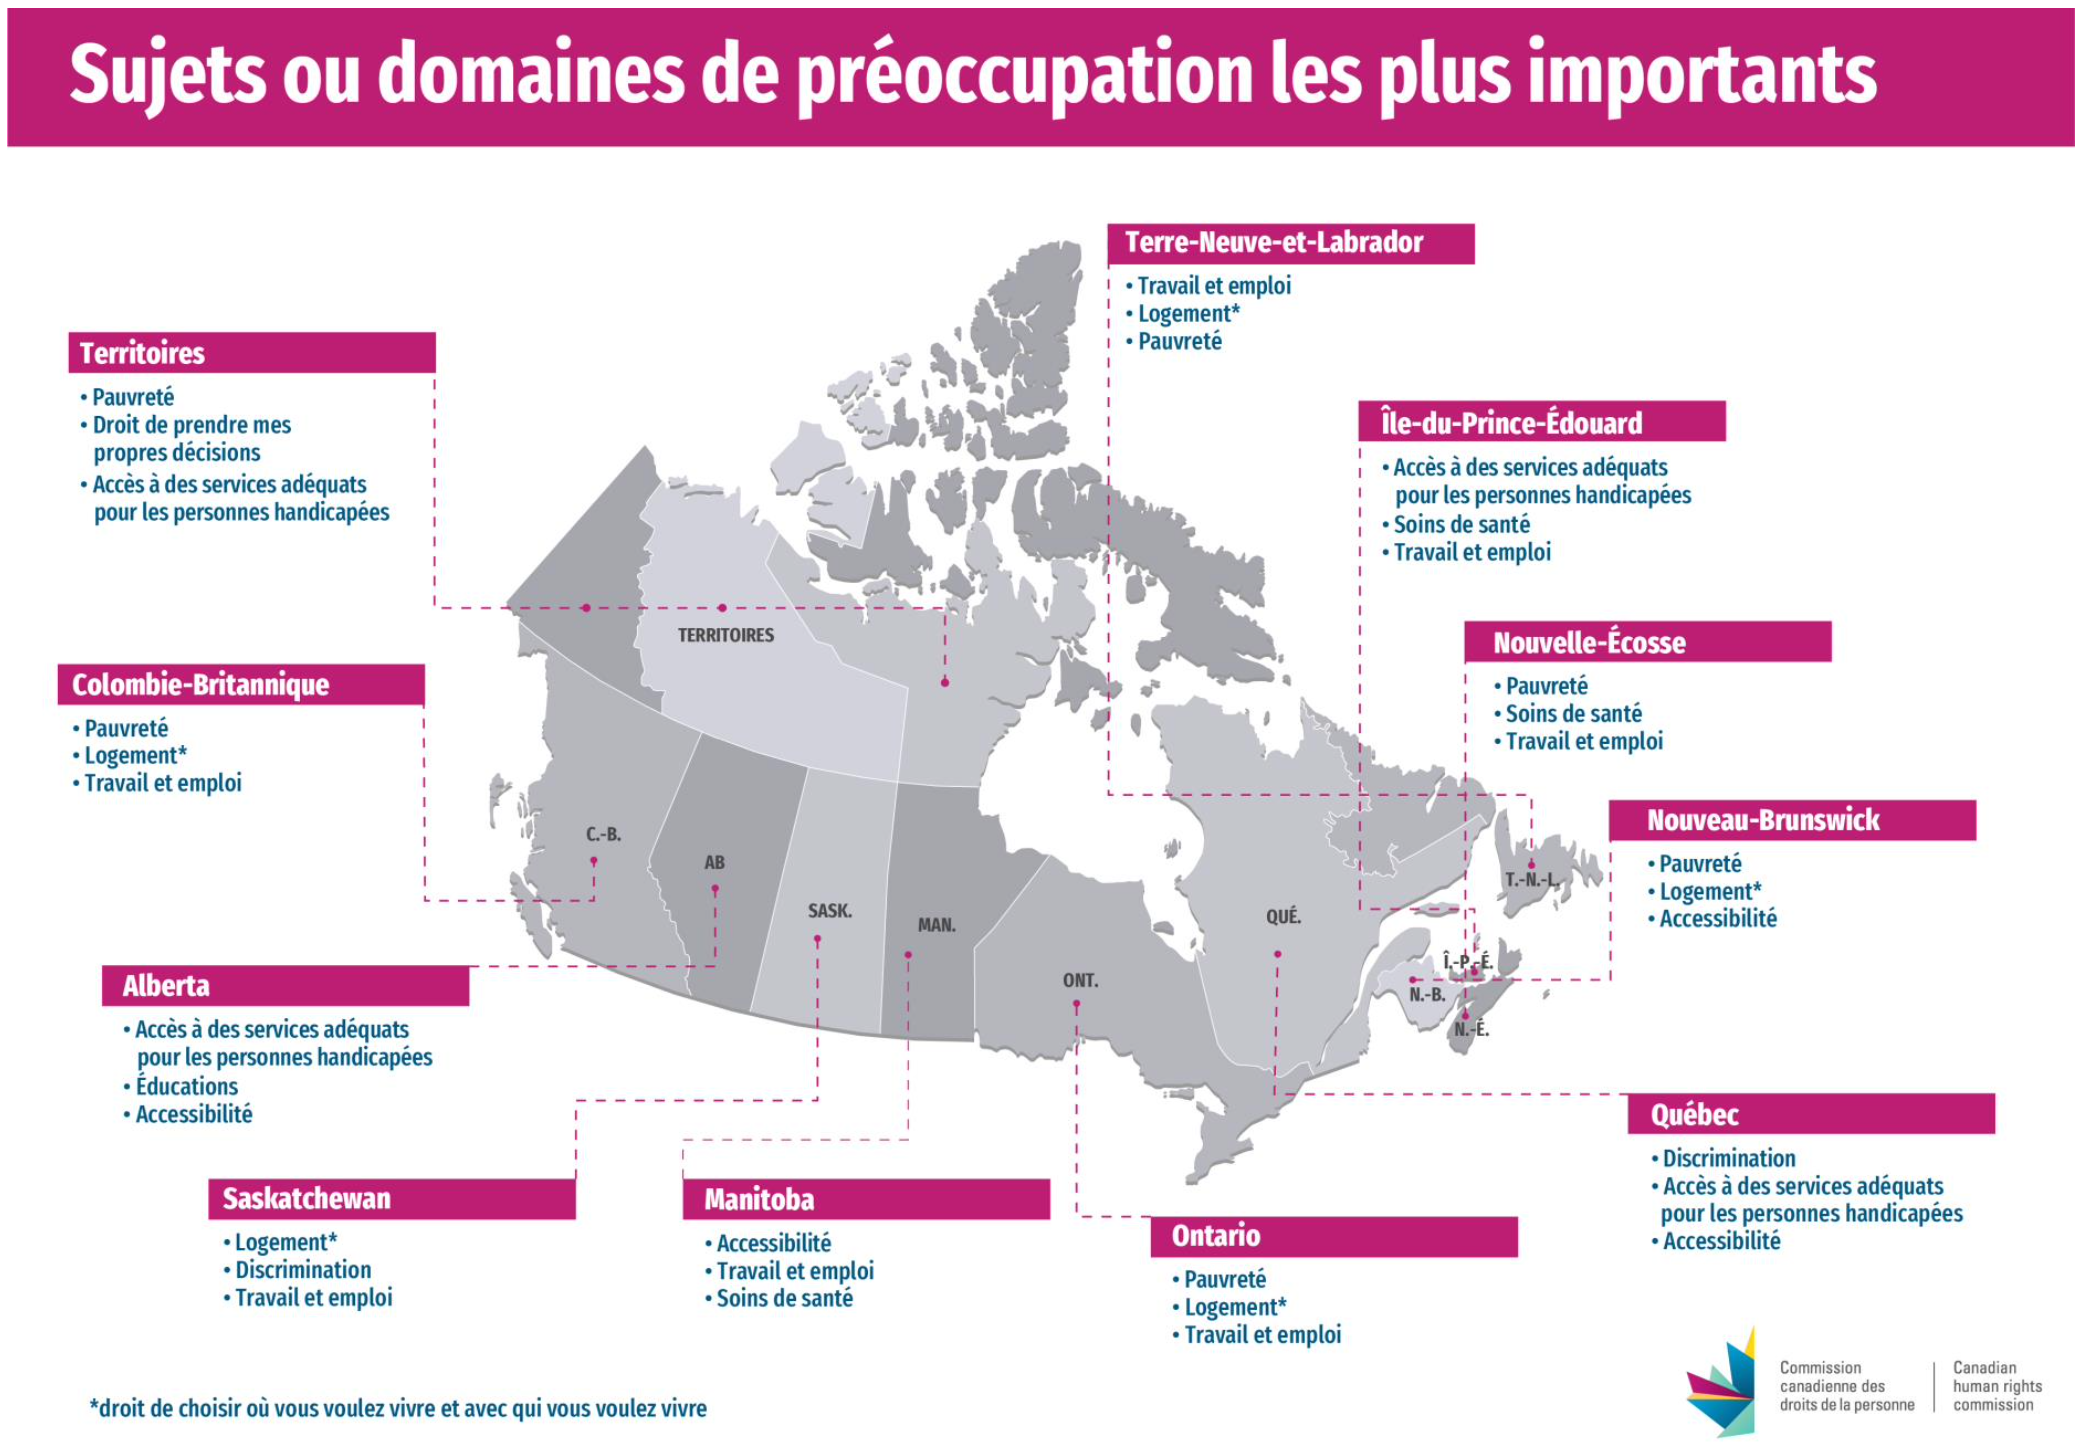 L'image s'agit d'une carte gégraphique du Canada avec les principaux domaines de préoccupation par région.